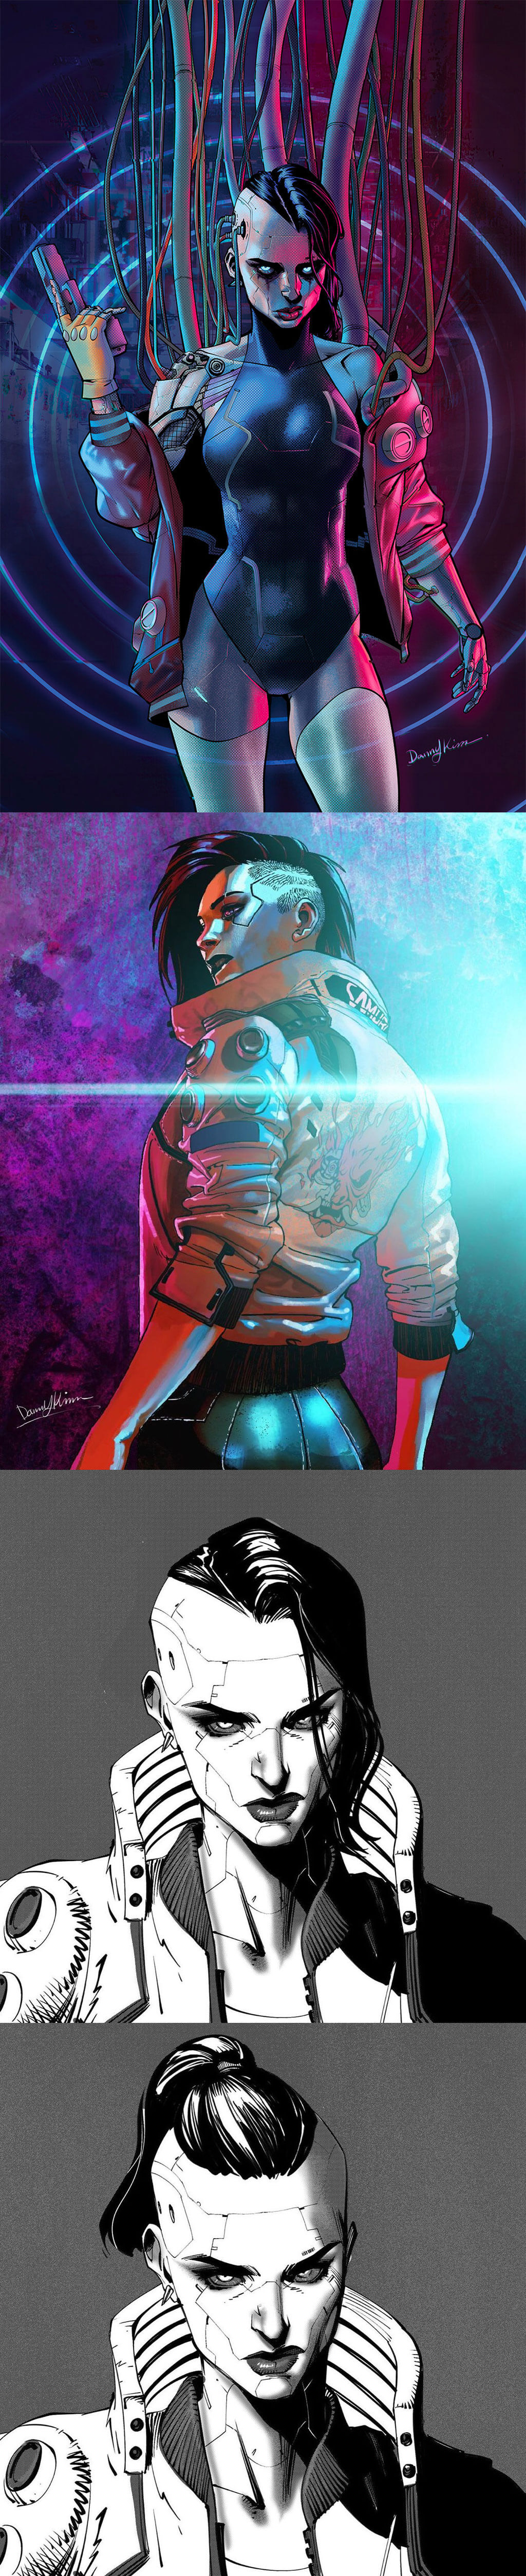 Cyberpunk 2077 Fan Art by Danny Kim